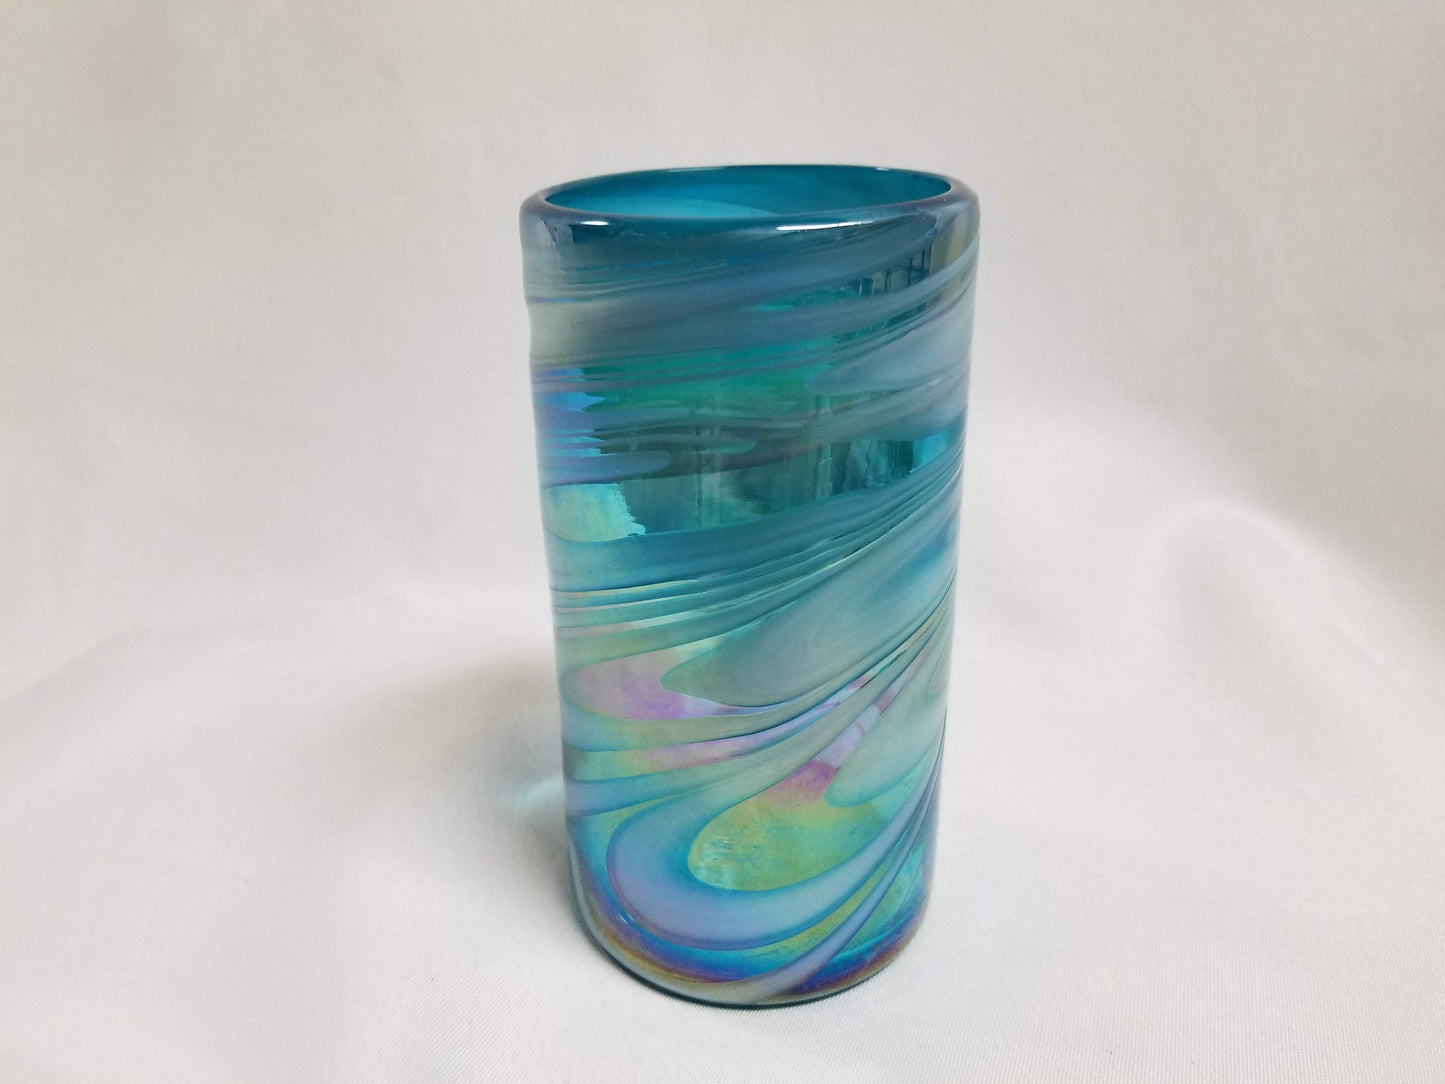 1 Hand Blown Water Glass - Turquoise/White Swirl - Blue Dorado Designs